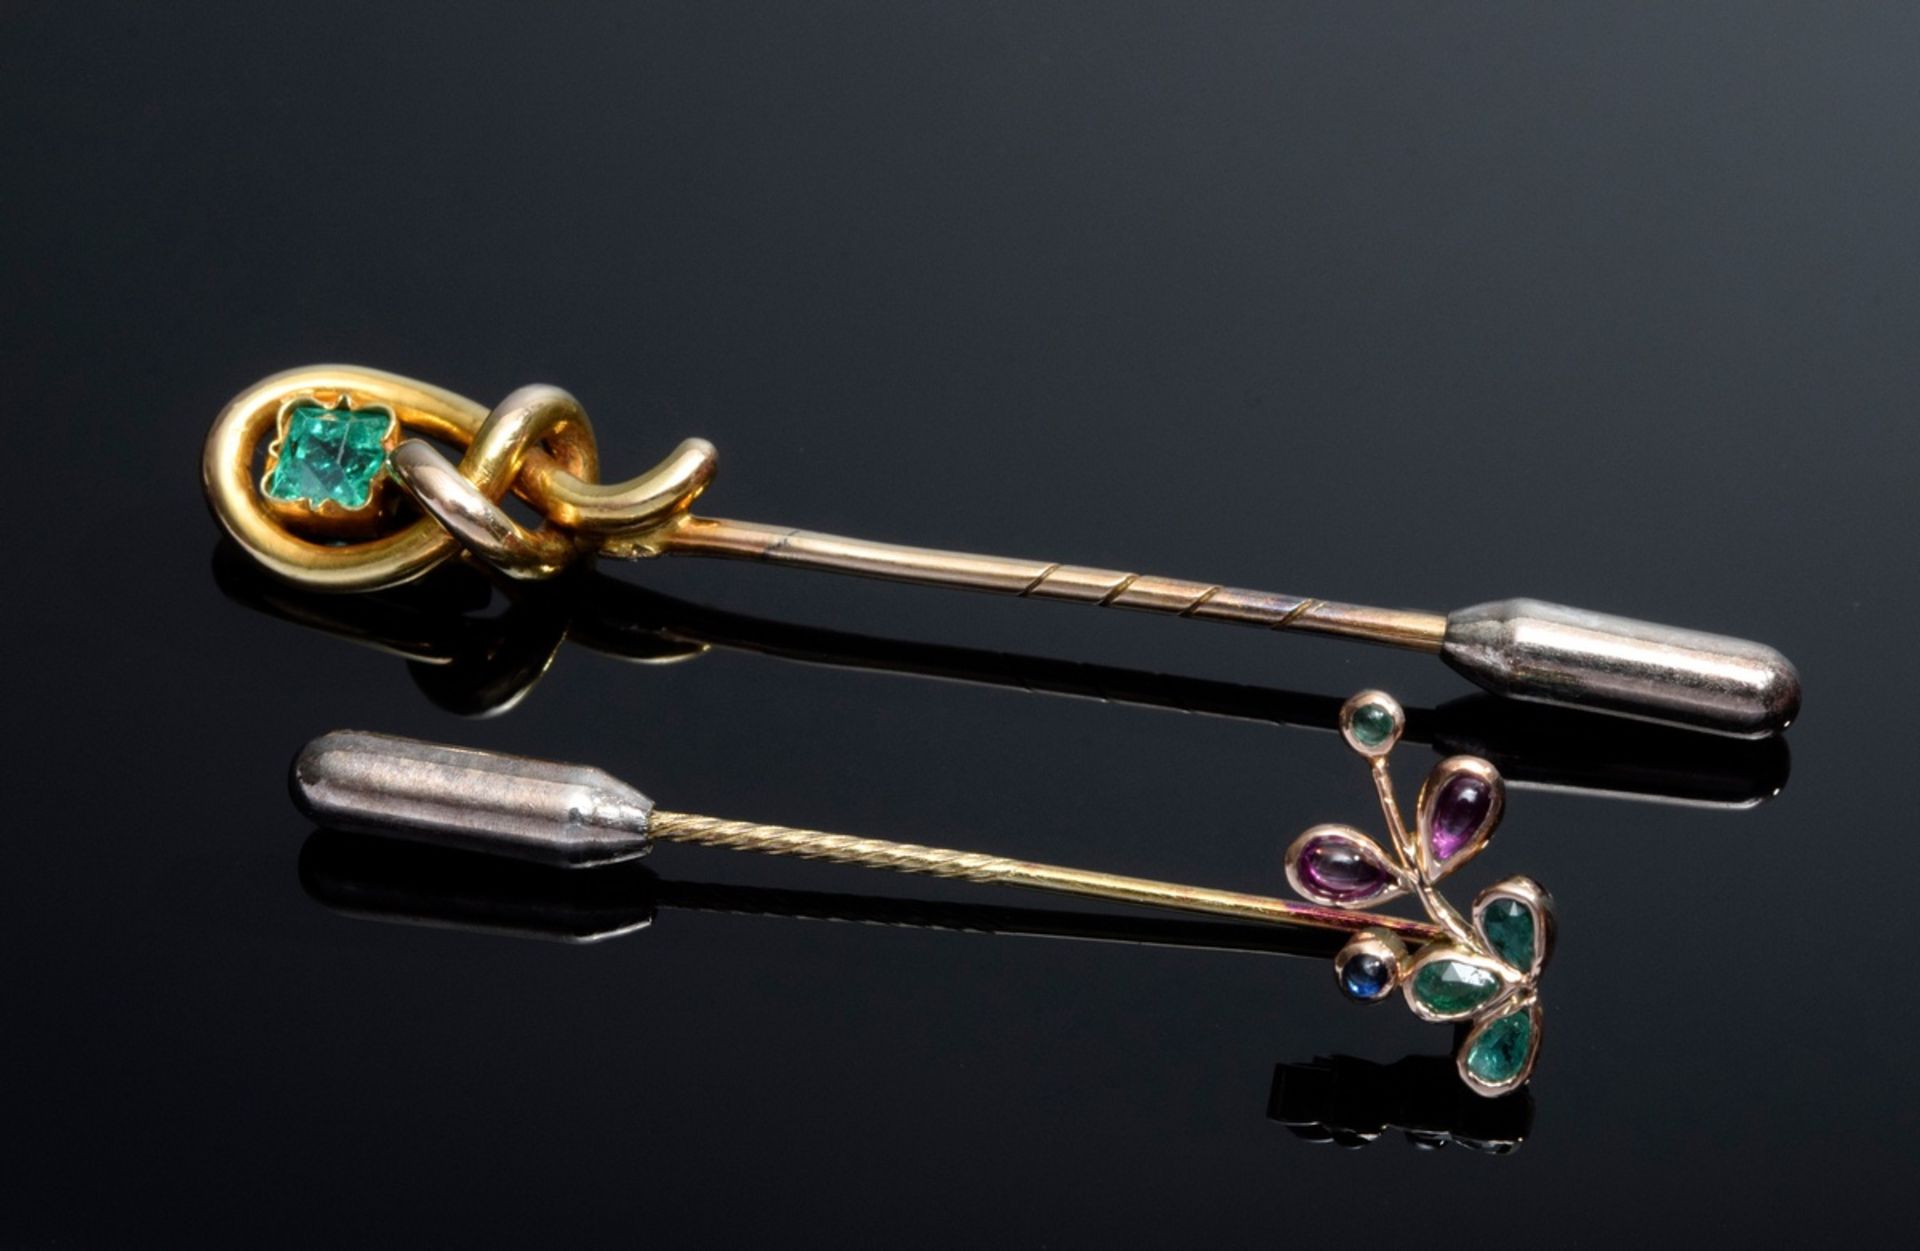 2 Diverse formschöne GG 585 Krawattennadeln mit Saphir | 2 Various GG 585 tie pins with sapphires,